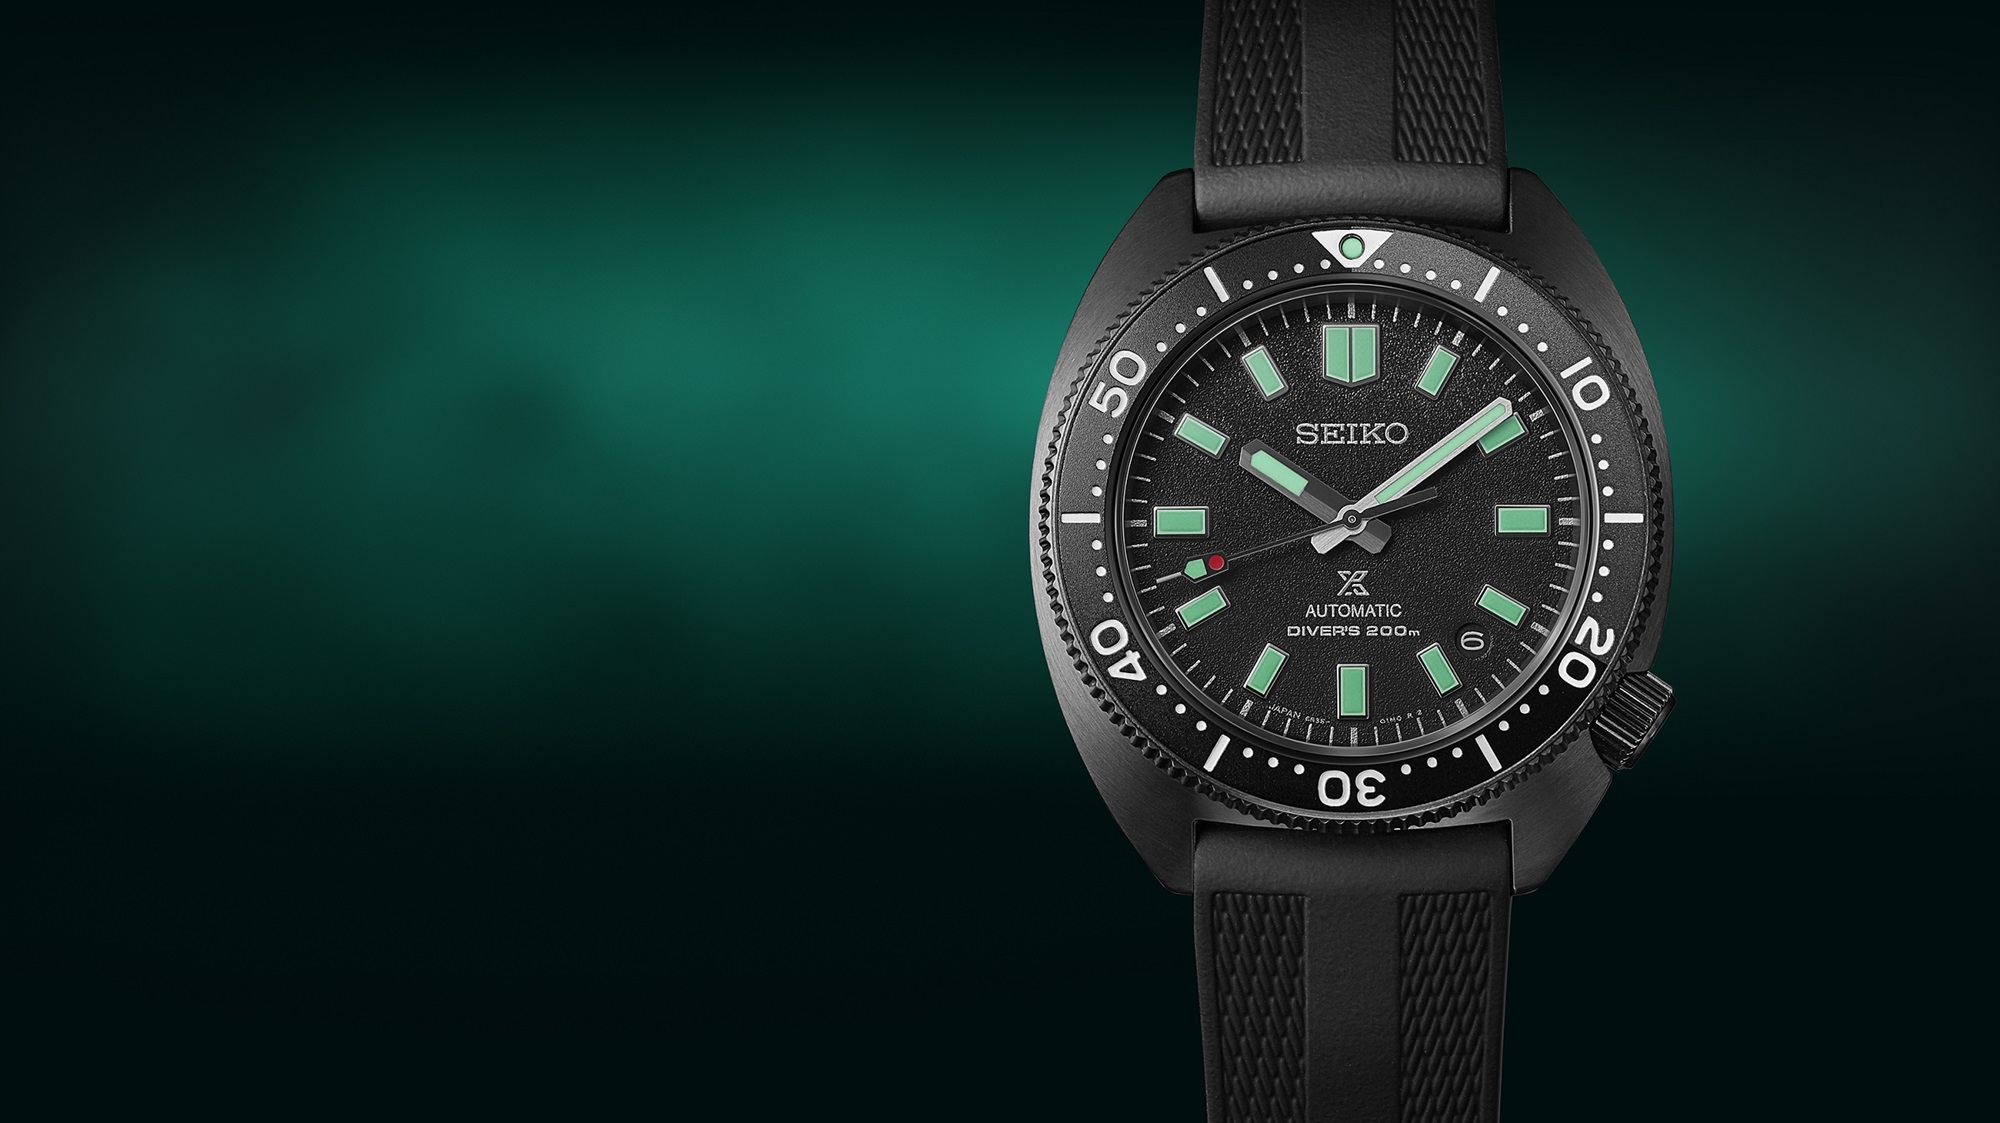 Detalhe do relógio de mergulho Seiko Prospex Diver's The Black Series Night Vision de edição limitada, SPB335J1, modelo preto com detalhes em verde-água luminescentes. Foto do relógio sobre fundo preto e verde esmeralda.